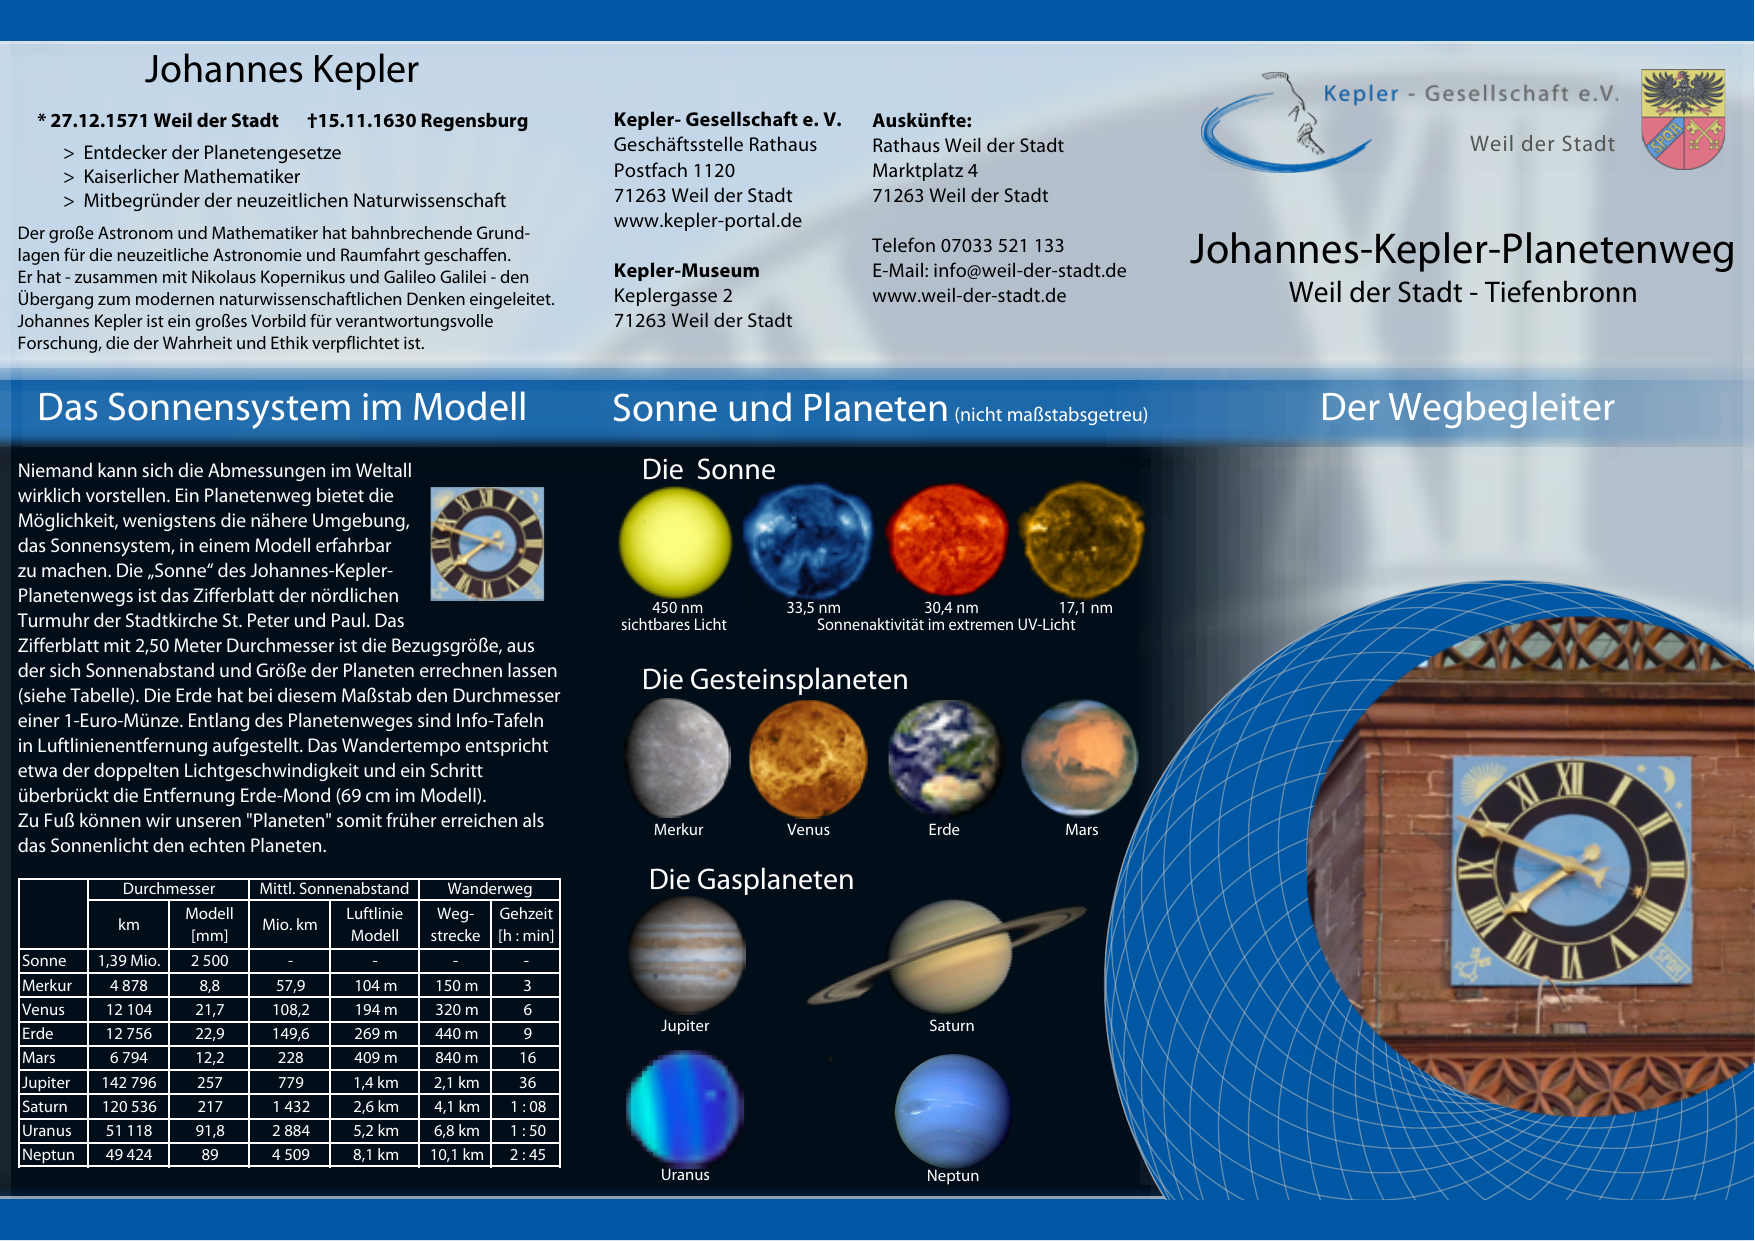 Bild Johannes Kepler Planetenweg Weil der Stadt